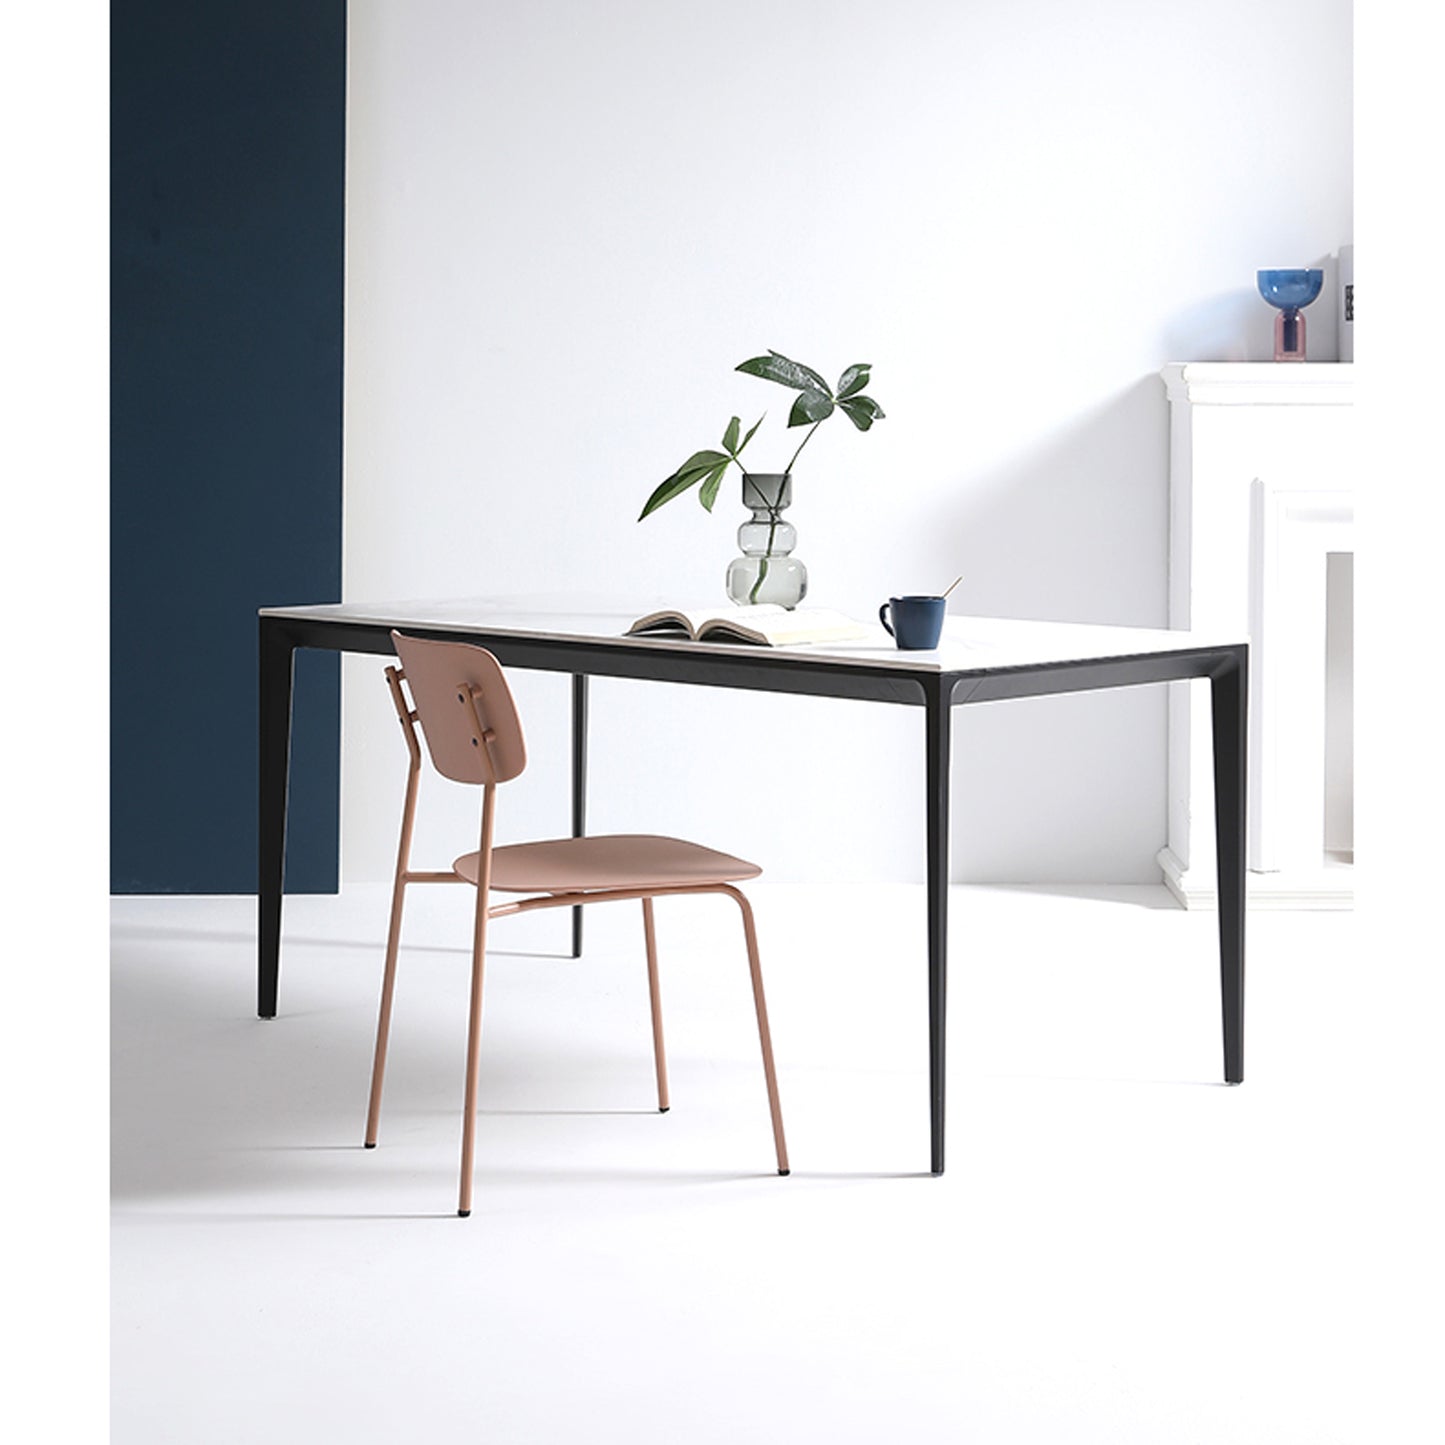 Lot de 4 chaises scandinaves au design minimaliste coloris rose poudré